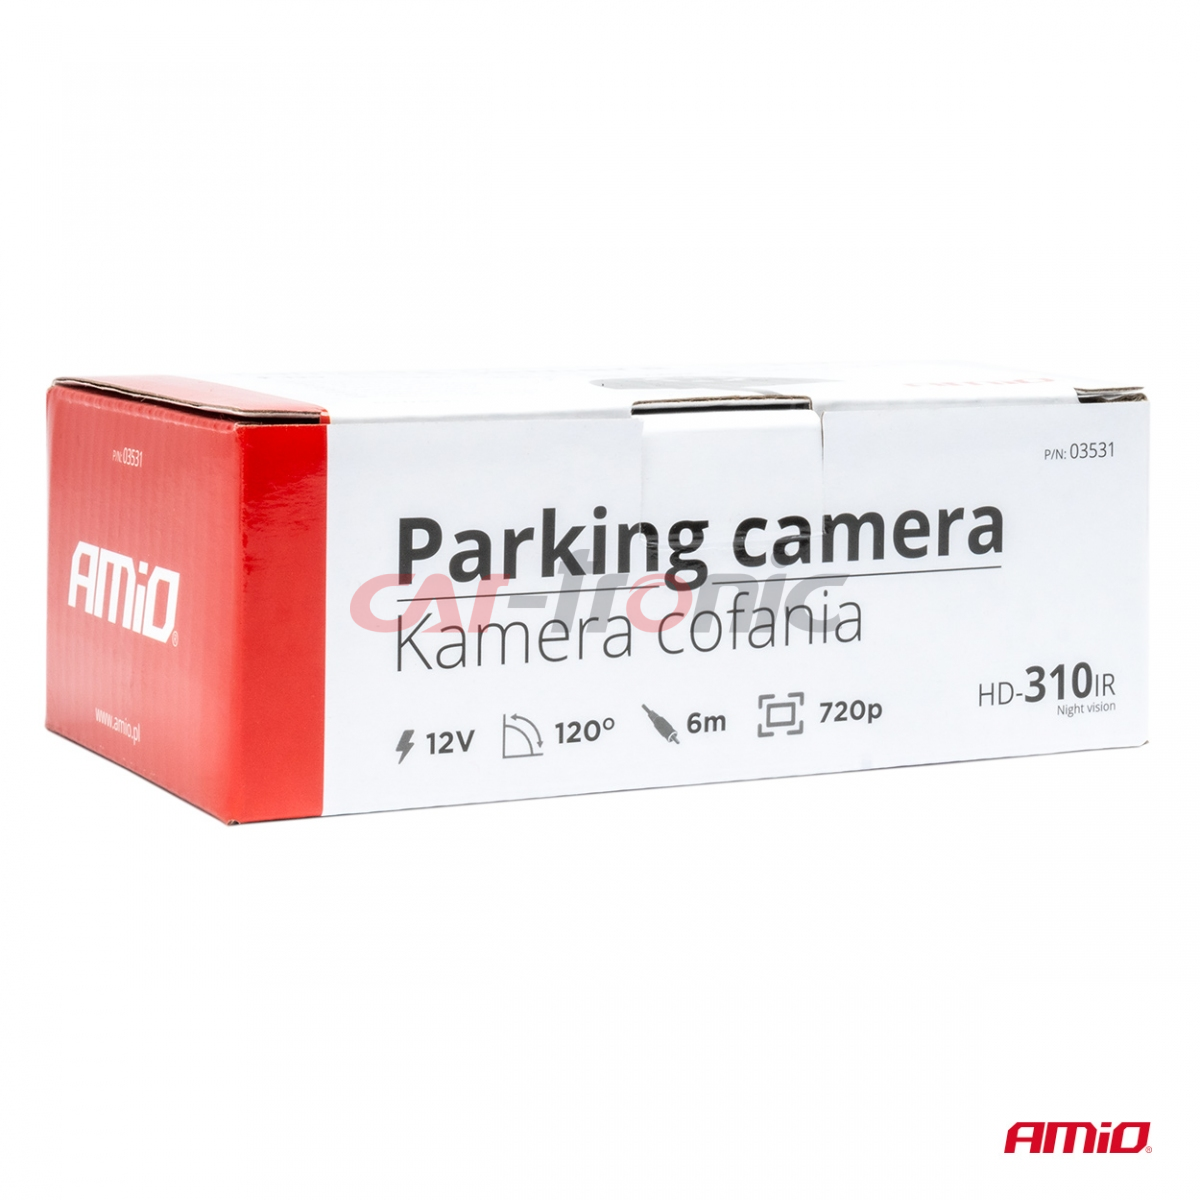 Kamera cofania parkowania HD-310 IR 12v 720p AMIO-03531